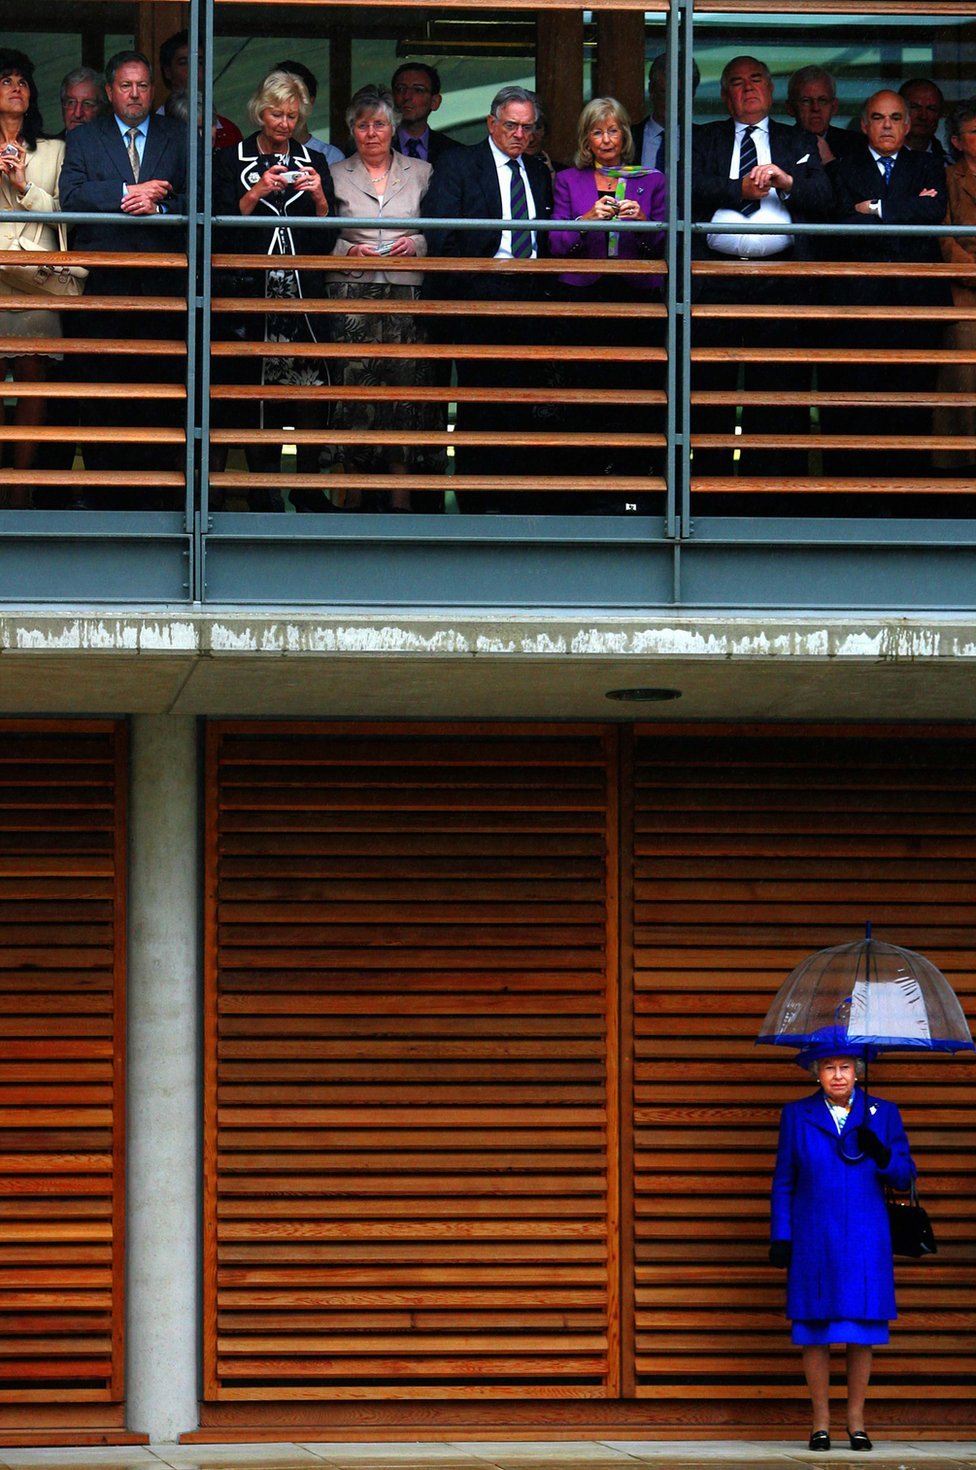 La reina Isabel II se resguarda de la lluvia mientras los invitados se refugian en la inauguración de la nueva sede de Lawn Tennis Associations en Roehampton, Londres, 2007